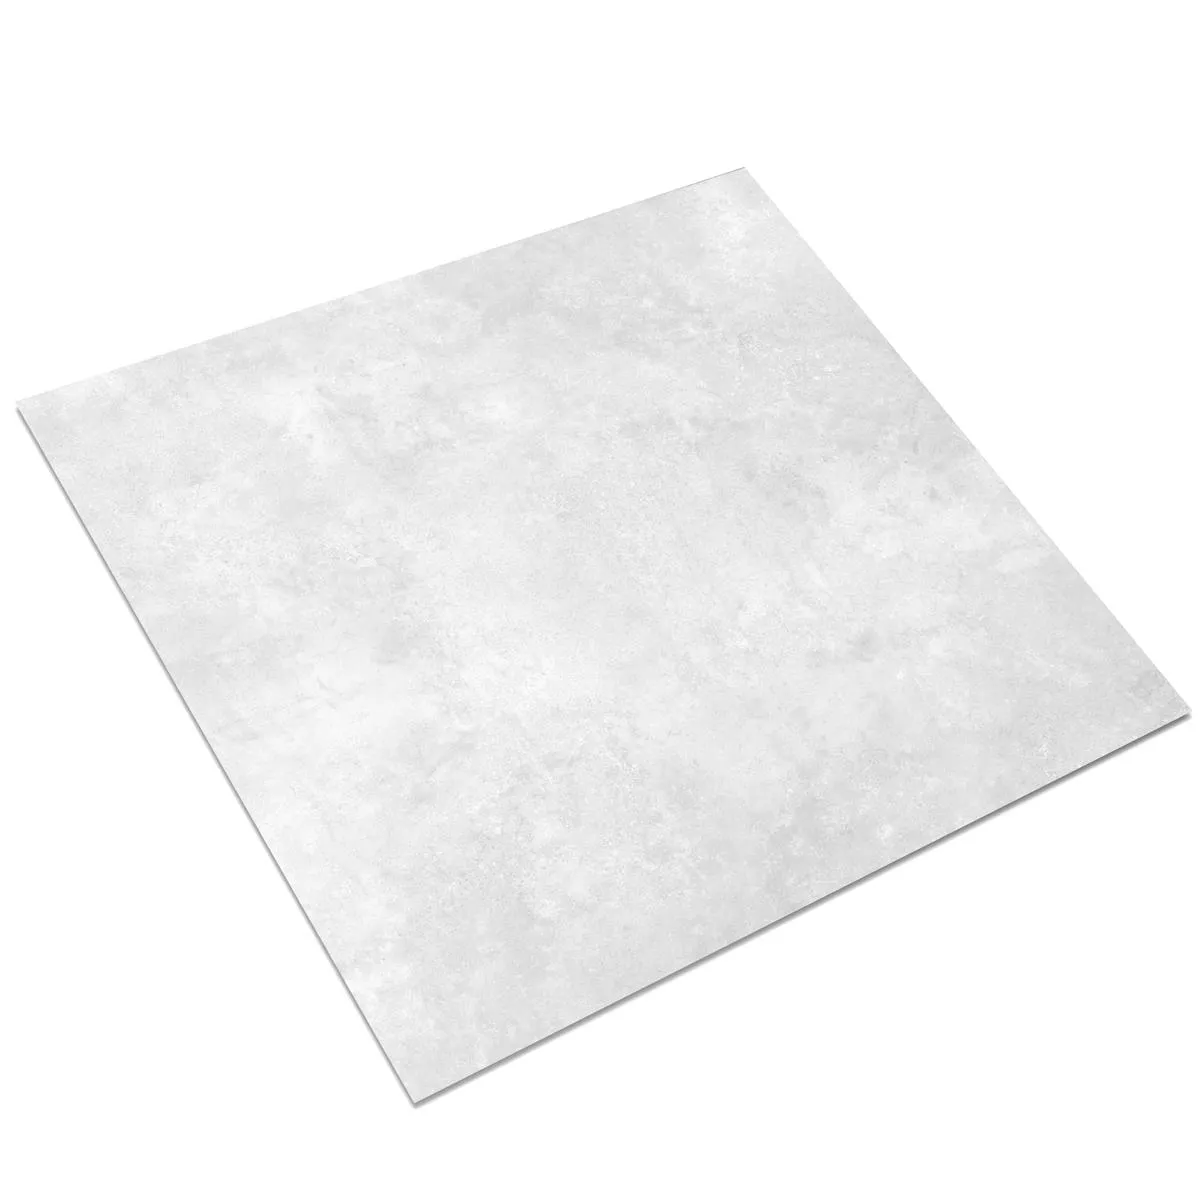 Πλακάκι Δαπέδου Illusion Μεταλλική Εμφάνιση Lappato Ασπρο 60x60cm